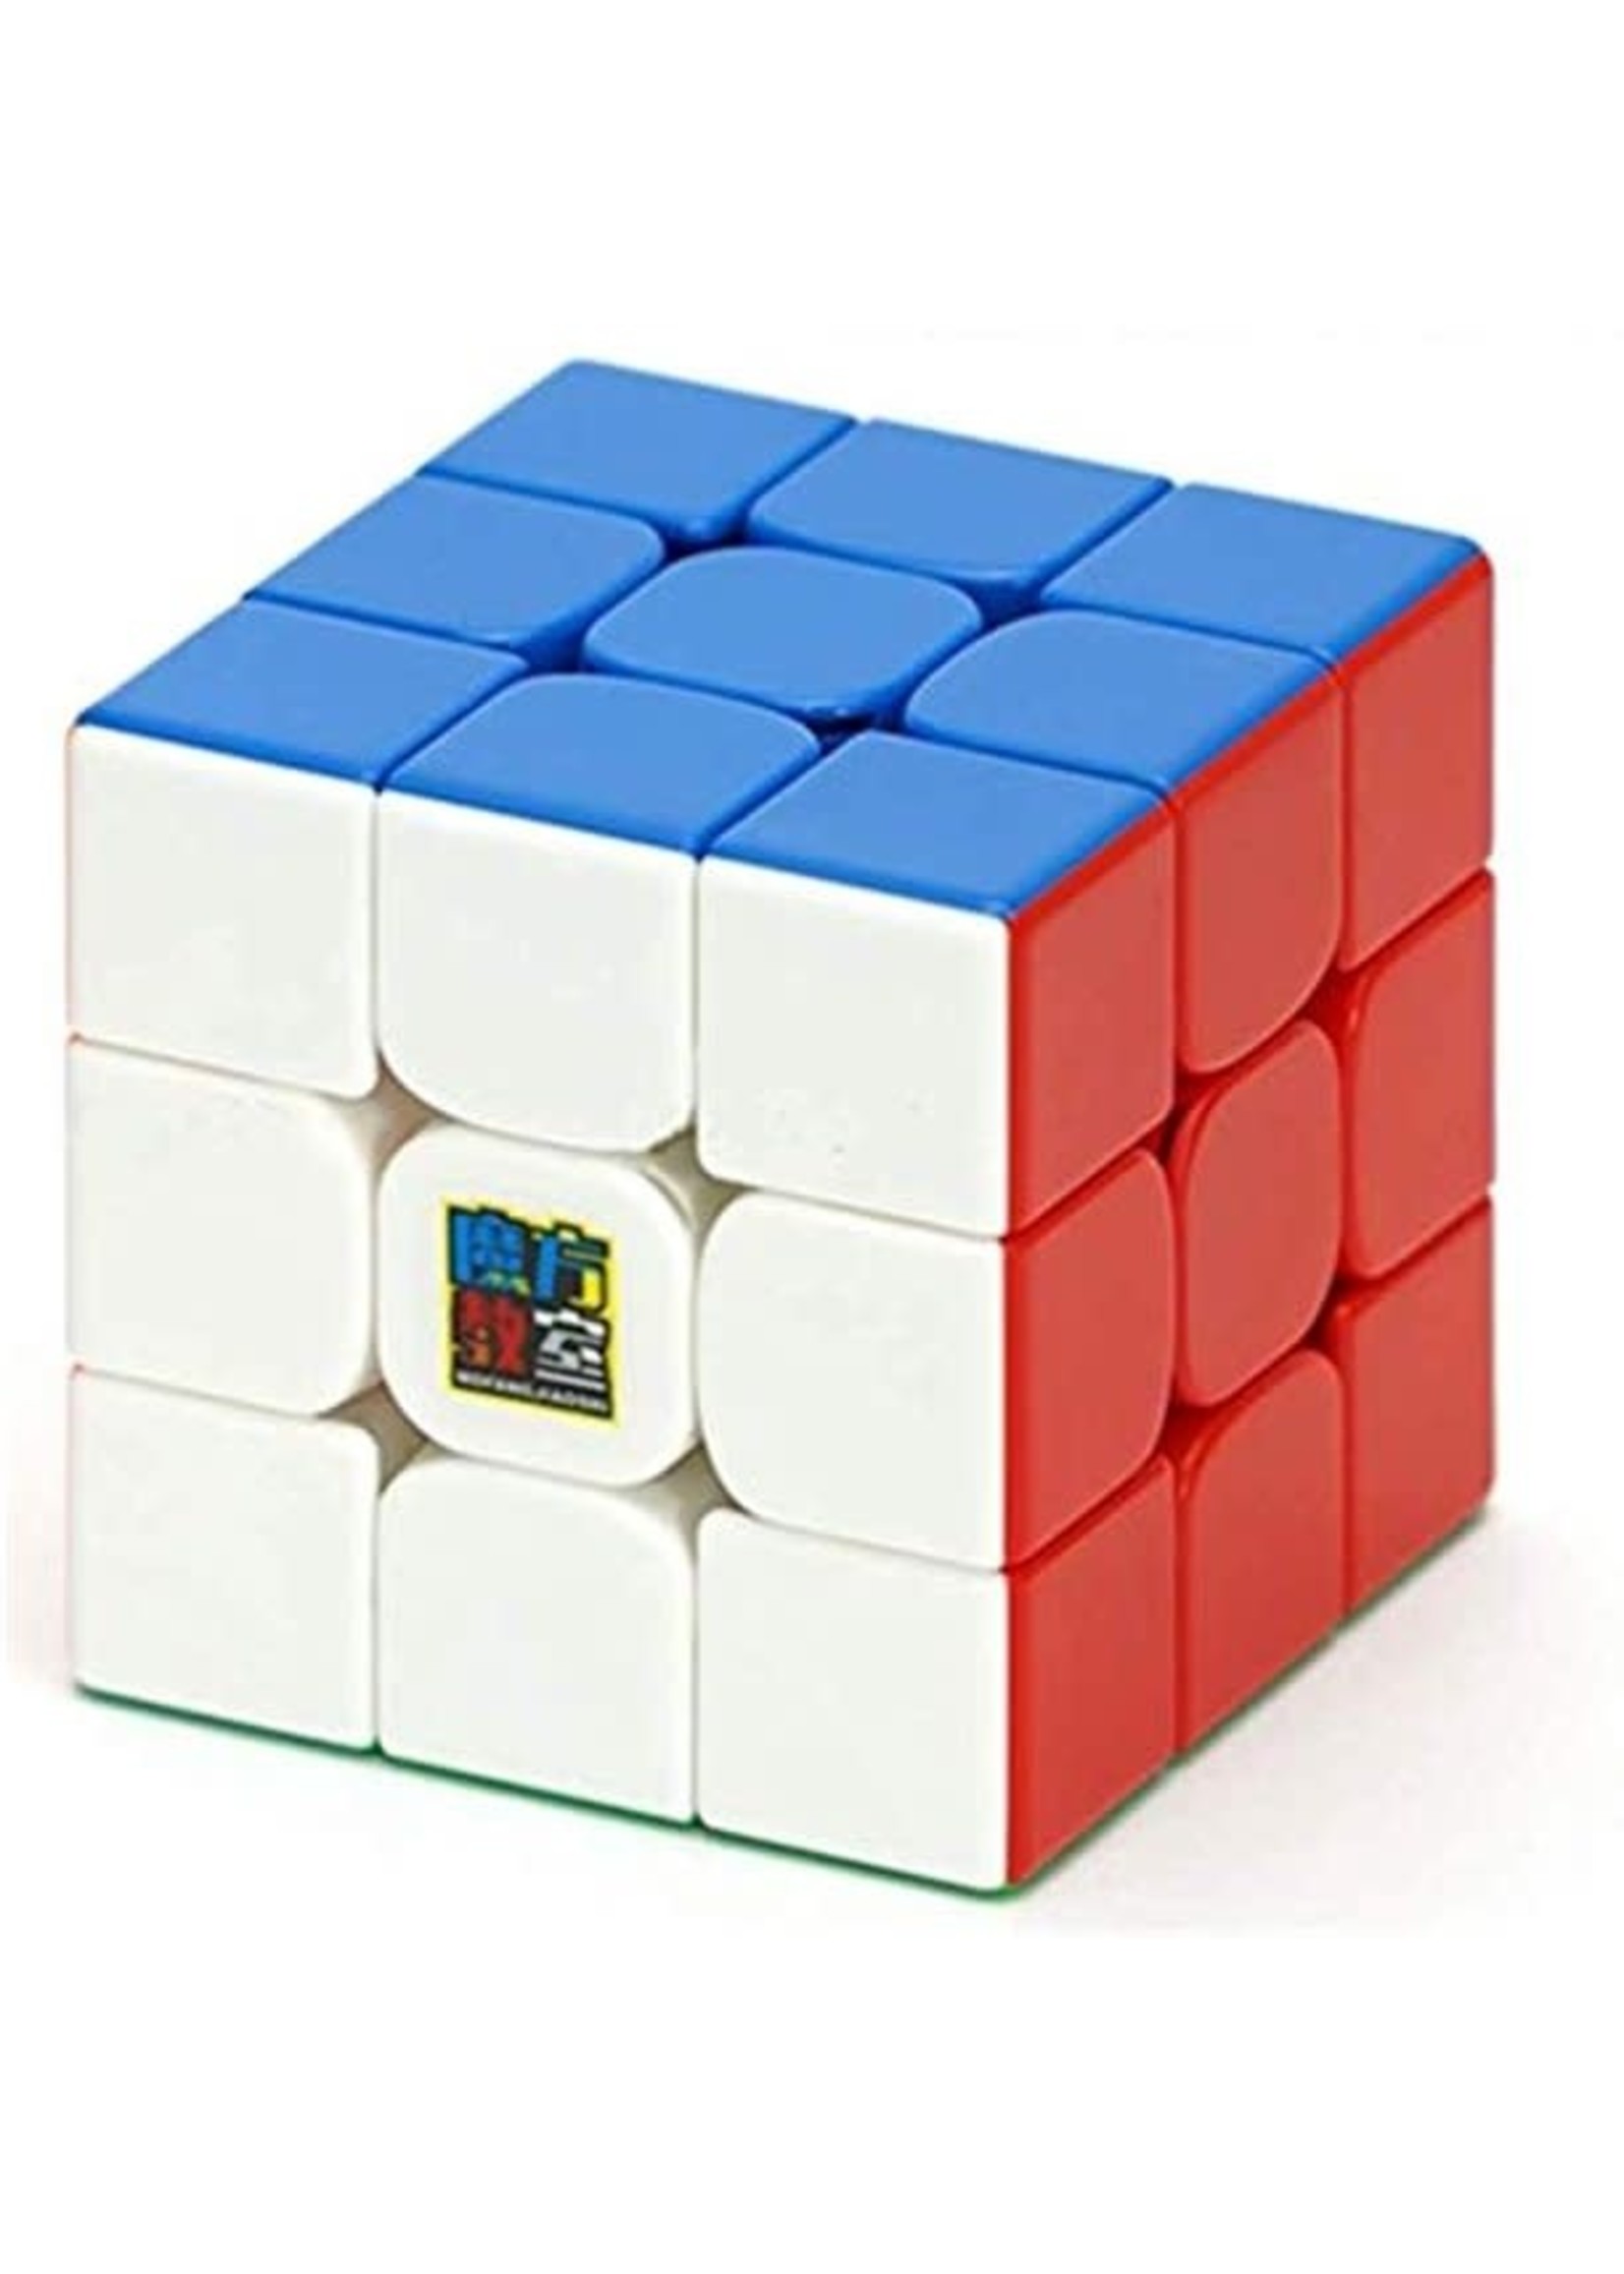 Moyu MoYu 3x3 RS3M Cube